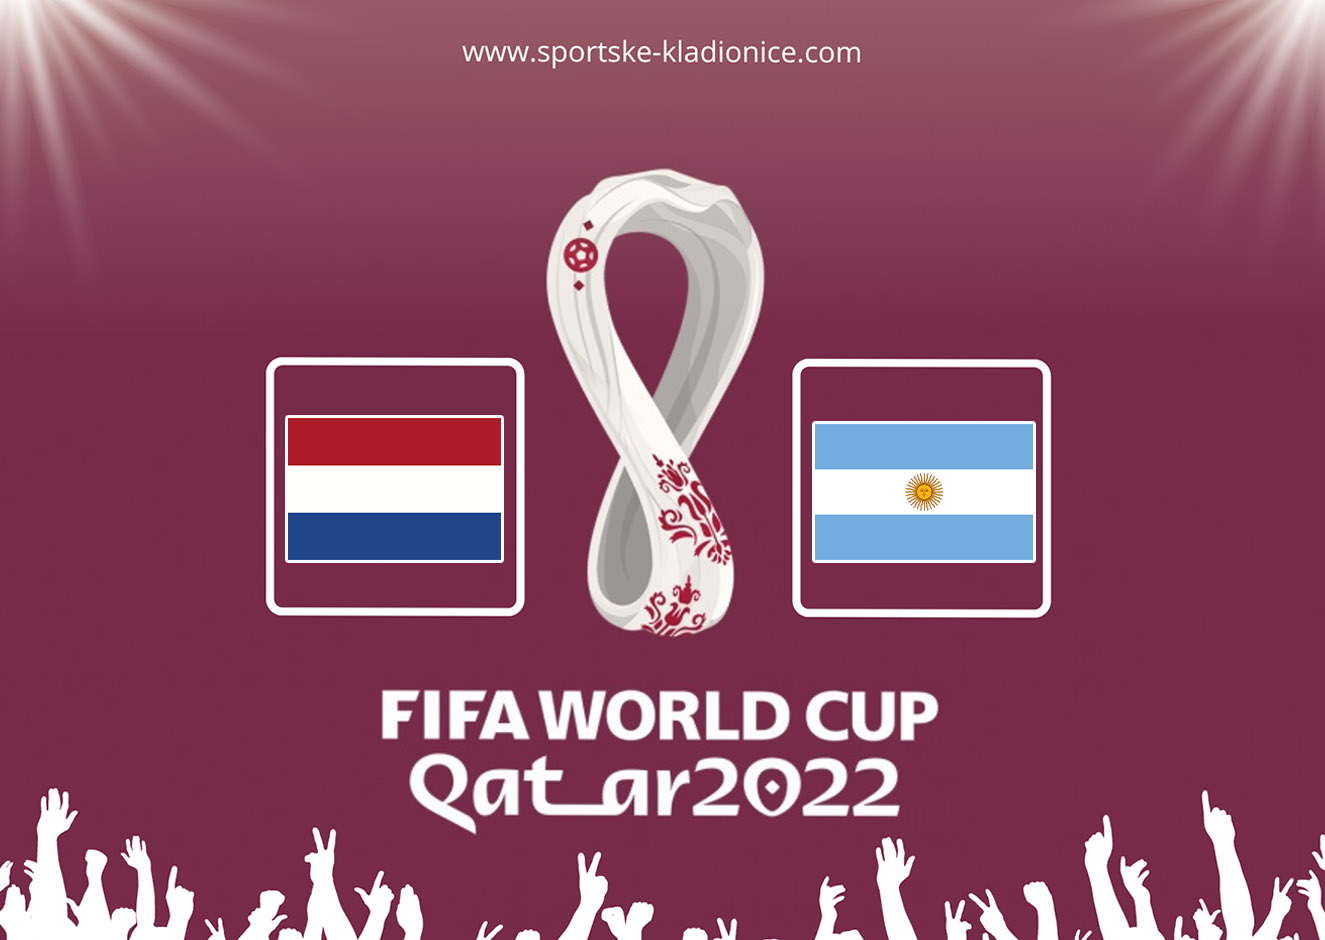 Nizozemska vs. Argentina